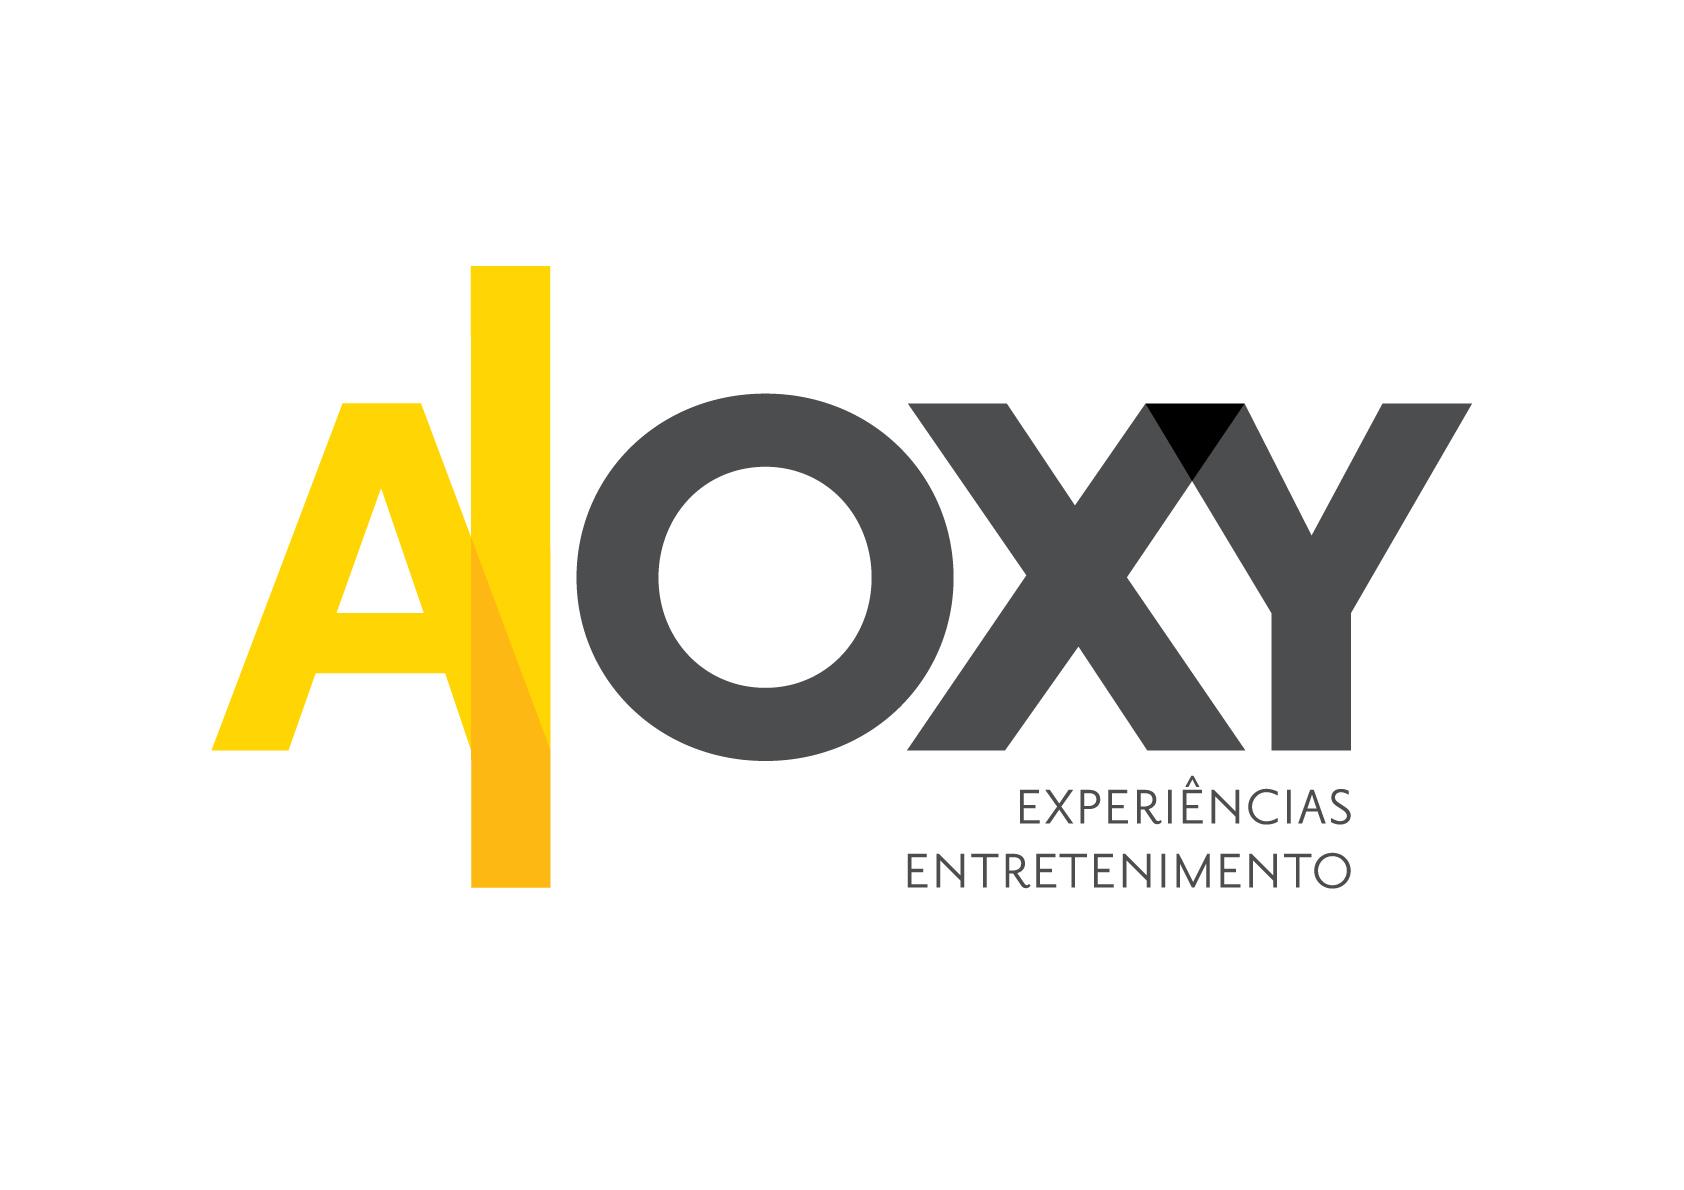 AOXY EXPERIENCIAS E ENTRETENIMENTO